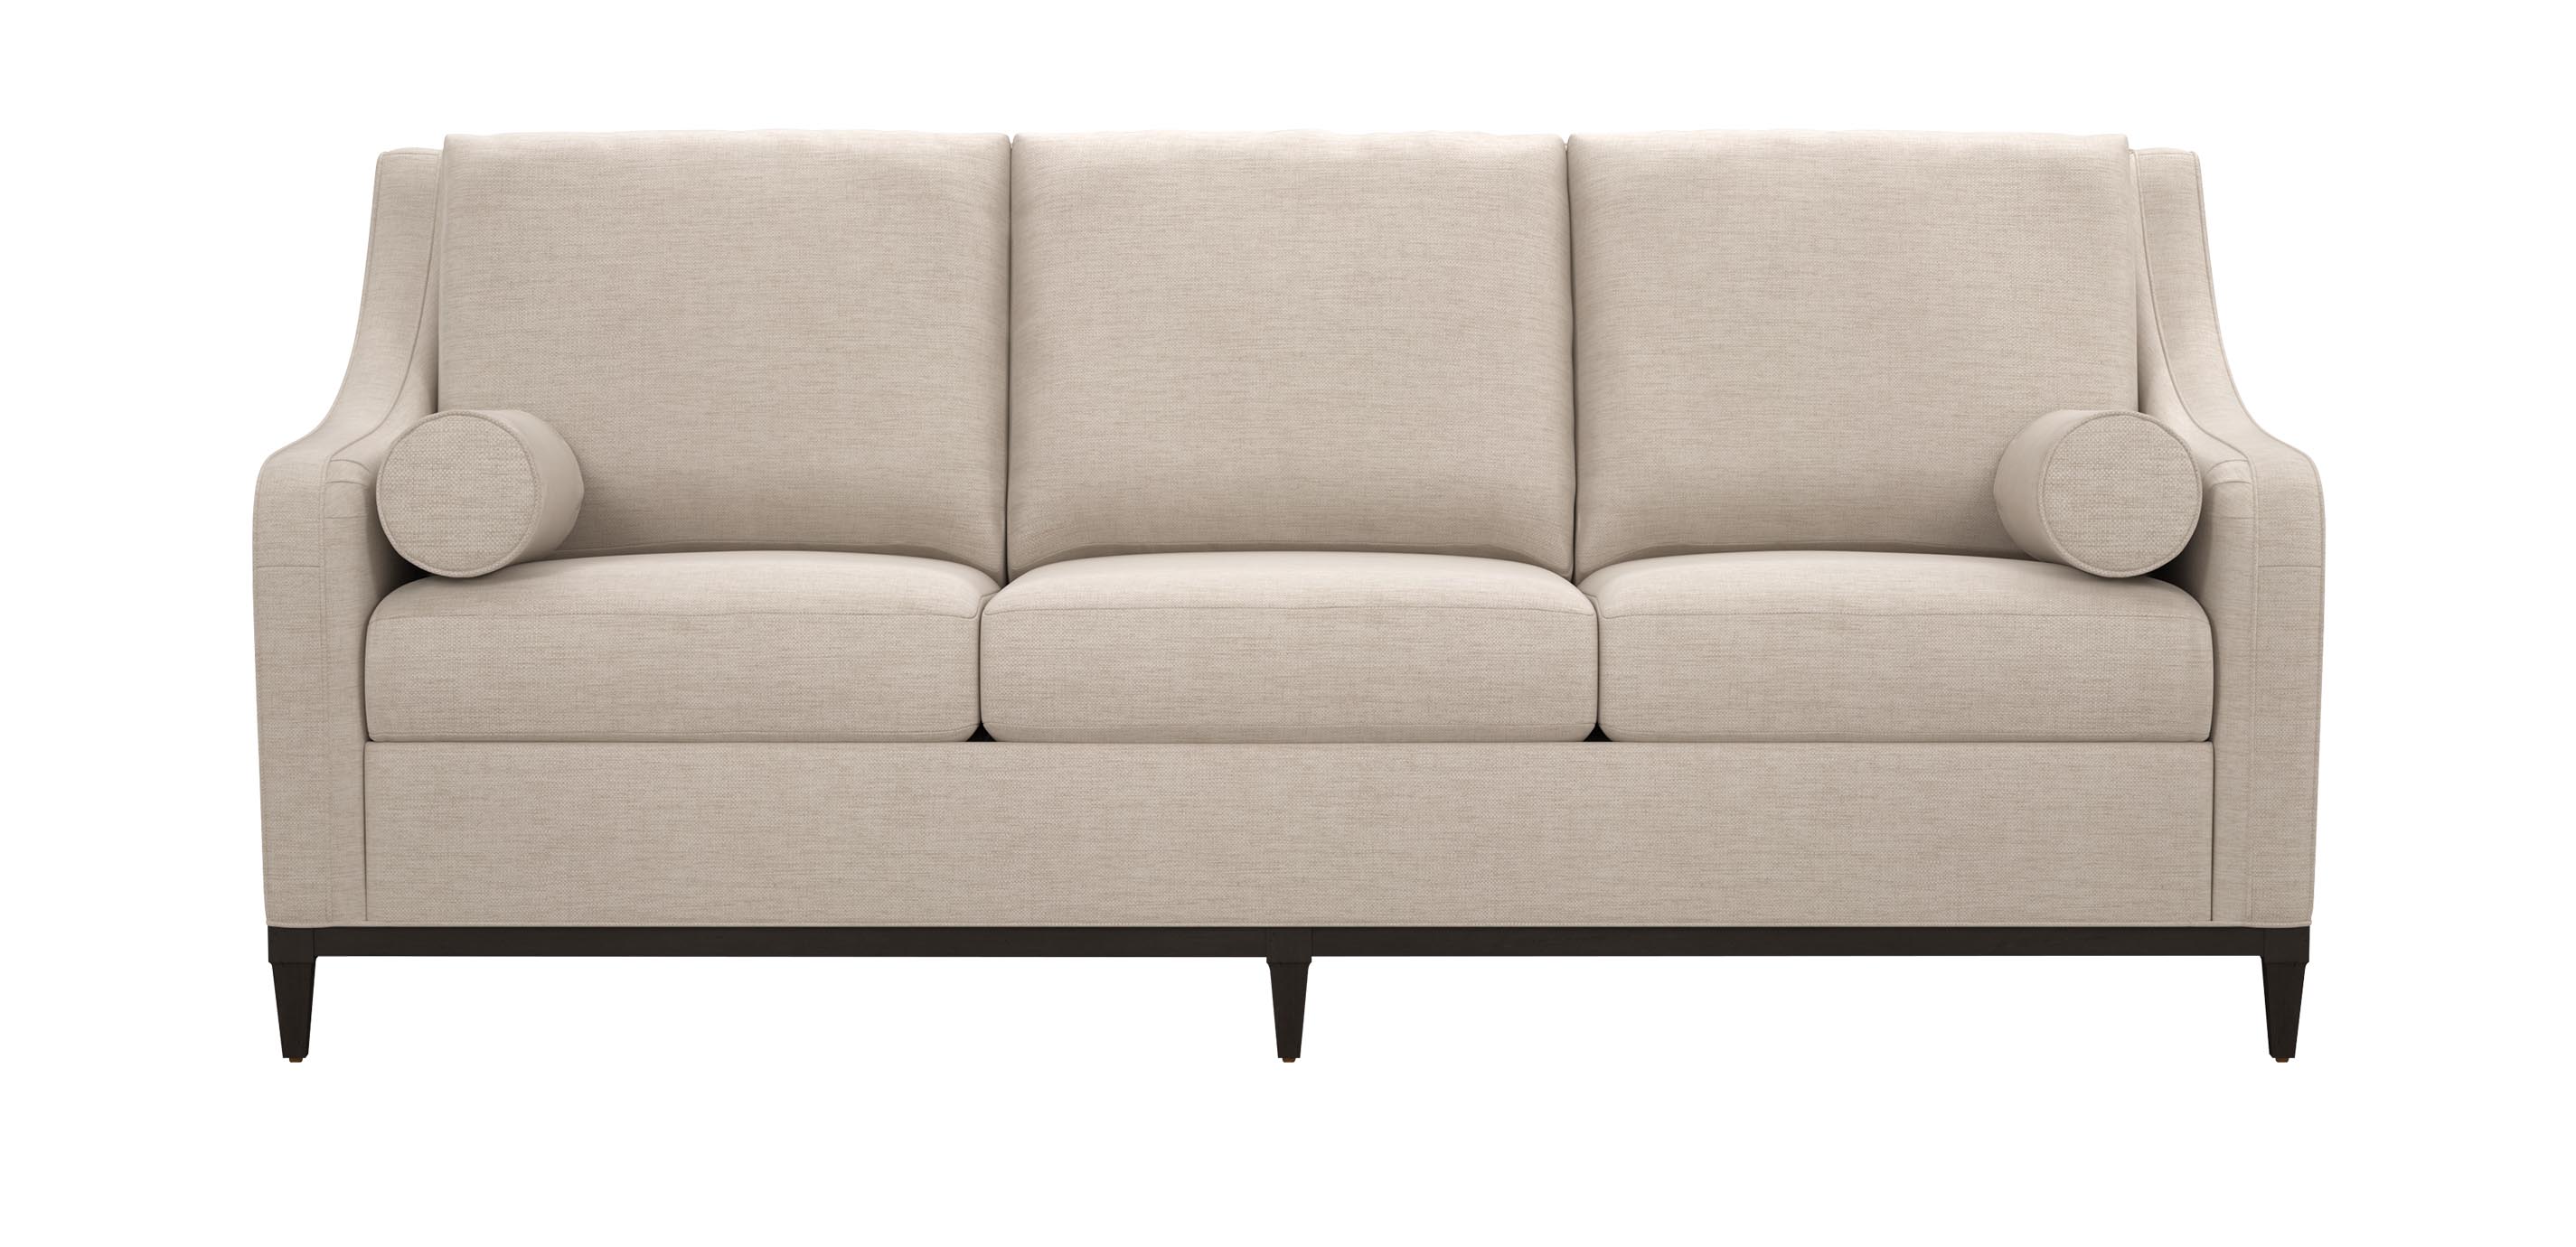 Odell Sofa Modern Ethan Allen